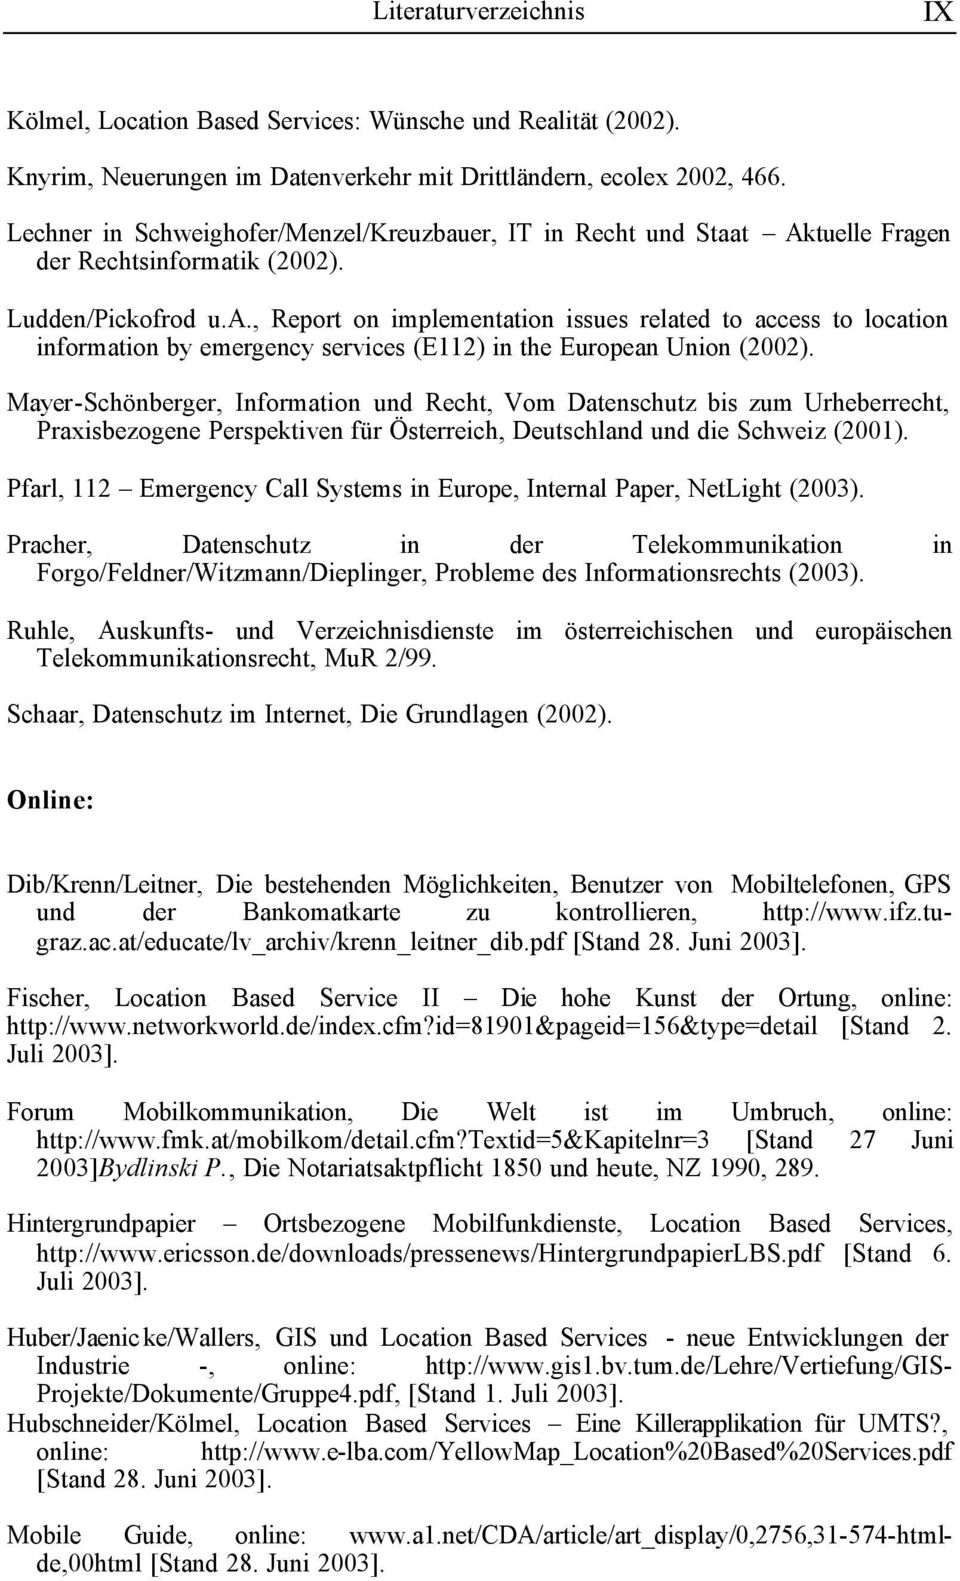 Mayer-Schönberger, Information und Recht, Vom Datenschutz bis zum Urheberrecht, Praxisbezogene Perspektiven für Österreich, Deutschland und die Schweiz (2001).